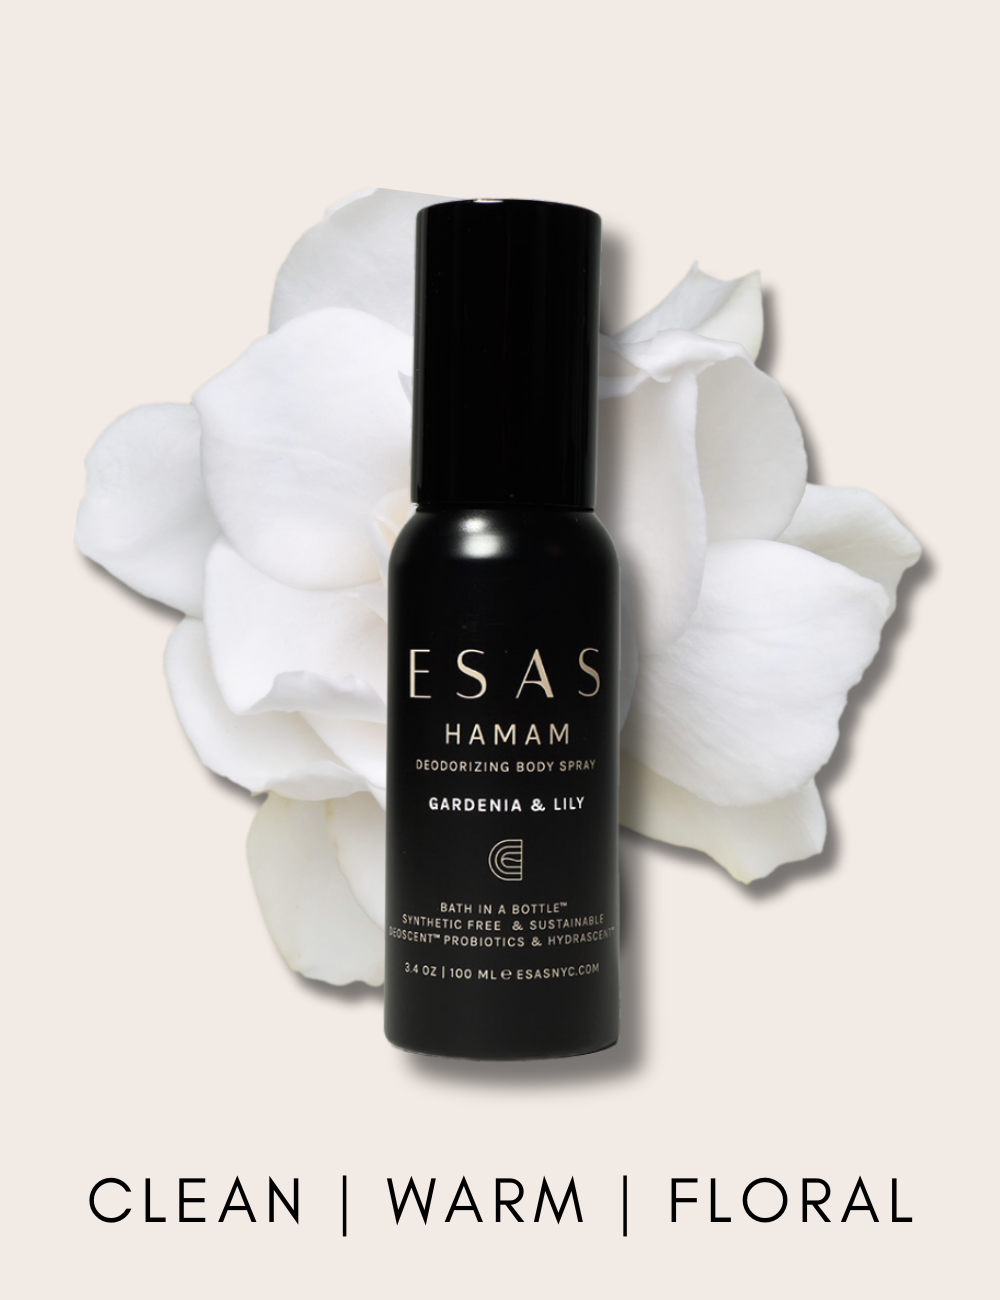 Gardenia & Lily Hamam Deo Body Spray – Esas Beauty